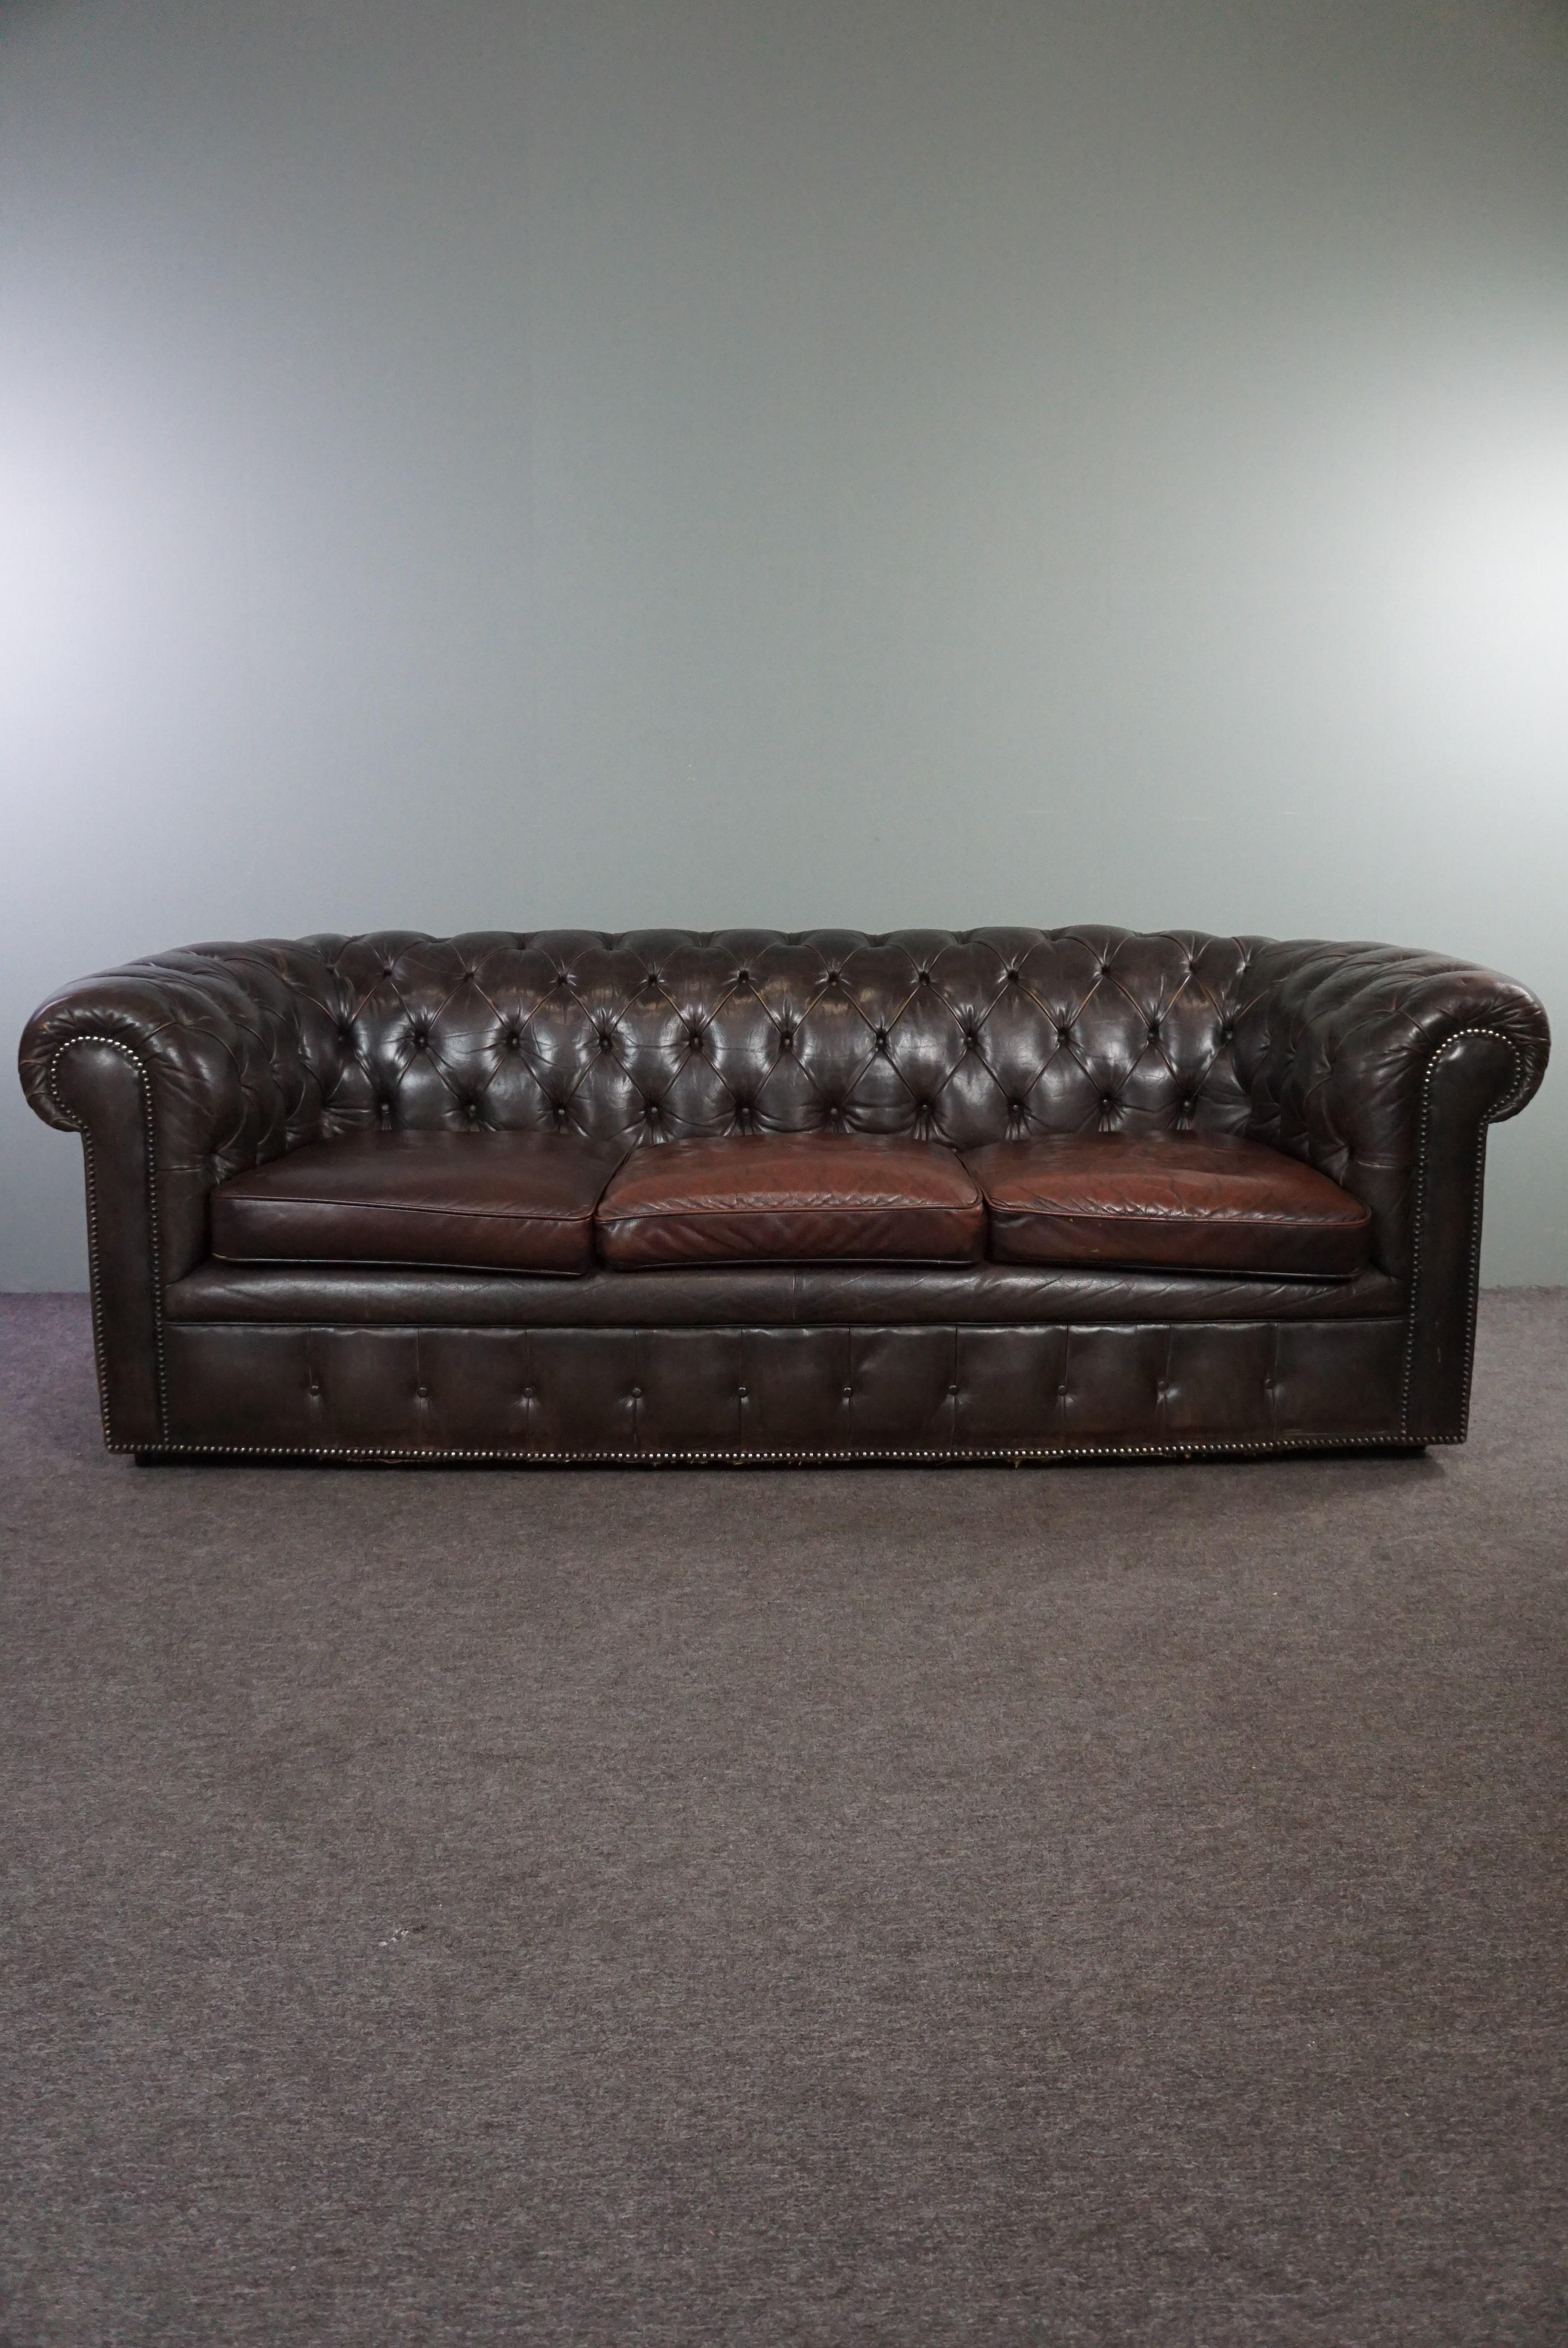 Angeboten wird dieses wunderbar bequeme 3-sitzige Chesterfield-Sofa aus Rindsleder, das durch seine Patina und sein Design eine erstaunliche Ausstrahlung hat.

Dieses schöne, mit Rosshaar gefüllte Chesterfield ist auf sehr schöne Weise gealtert.
Wer